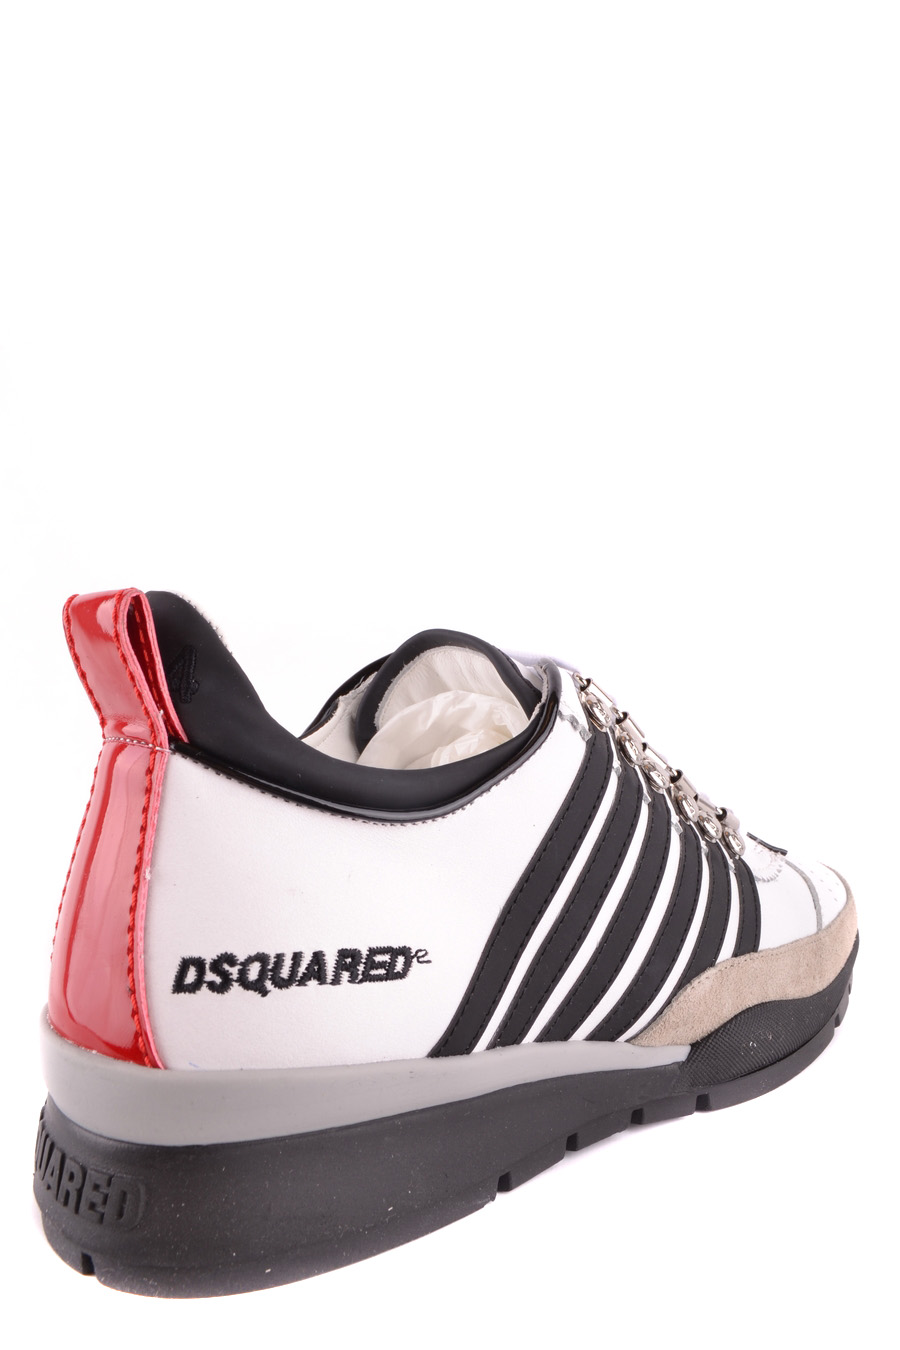 DSQUARED2 Sneakers | ViganoBoutique.com